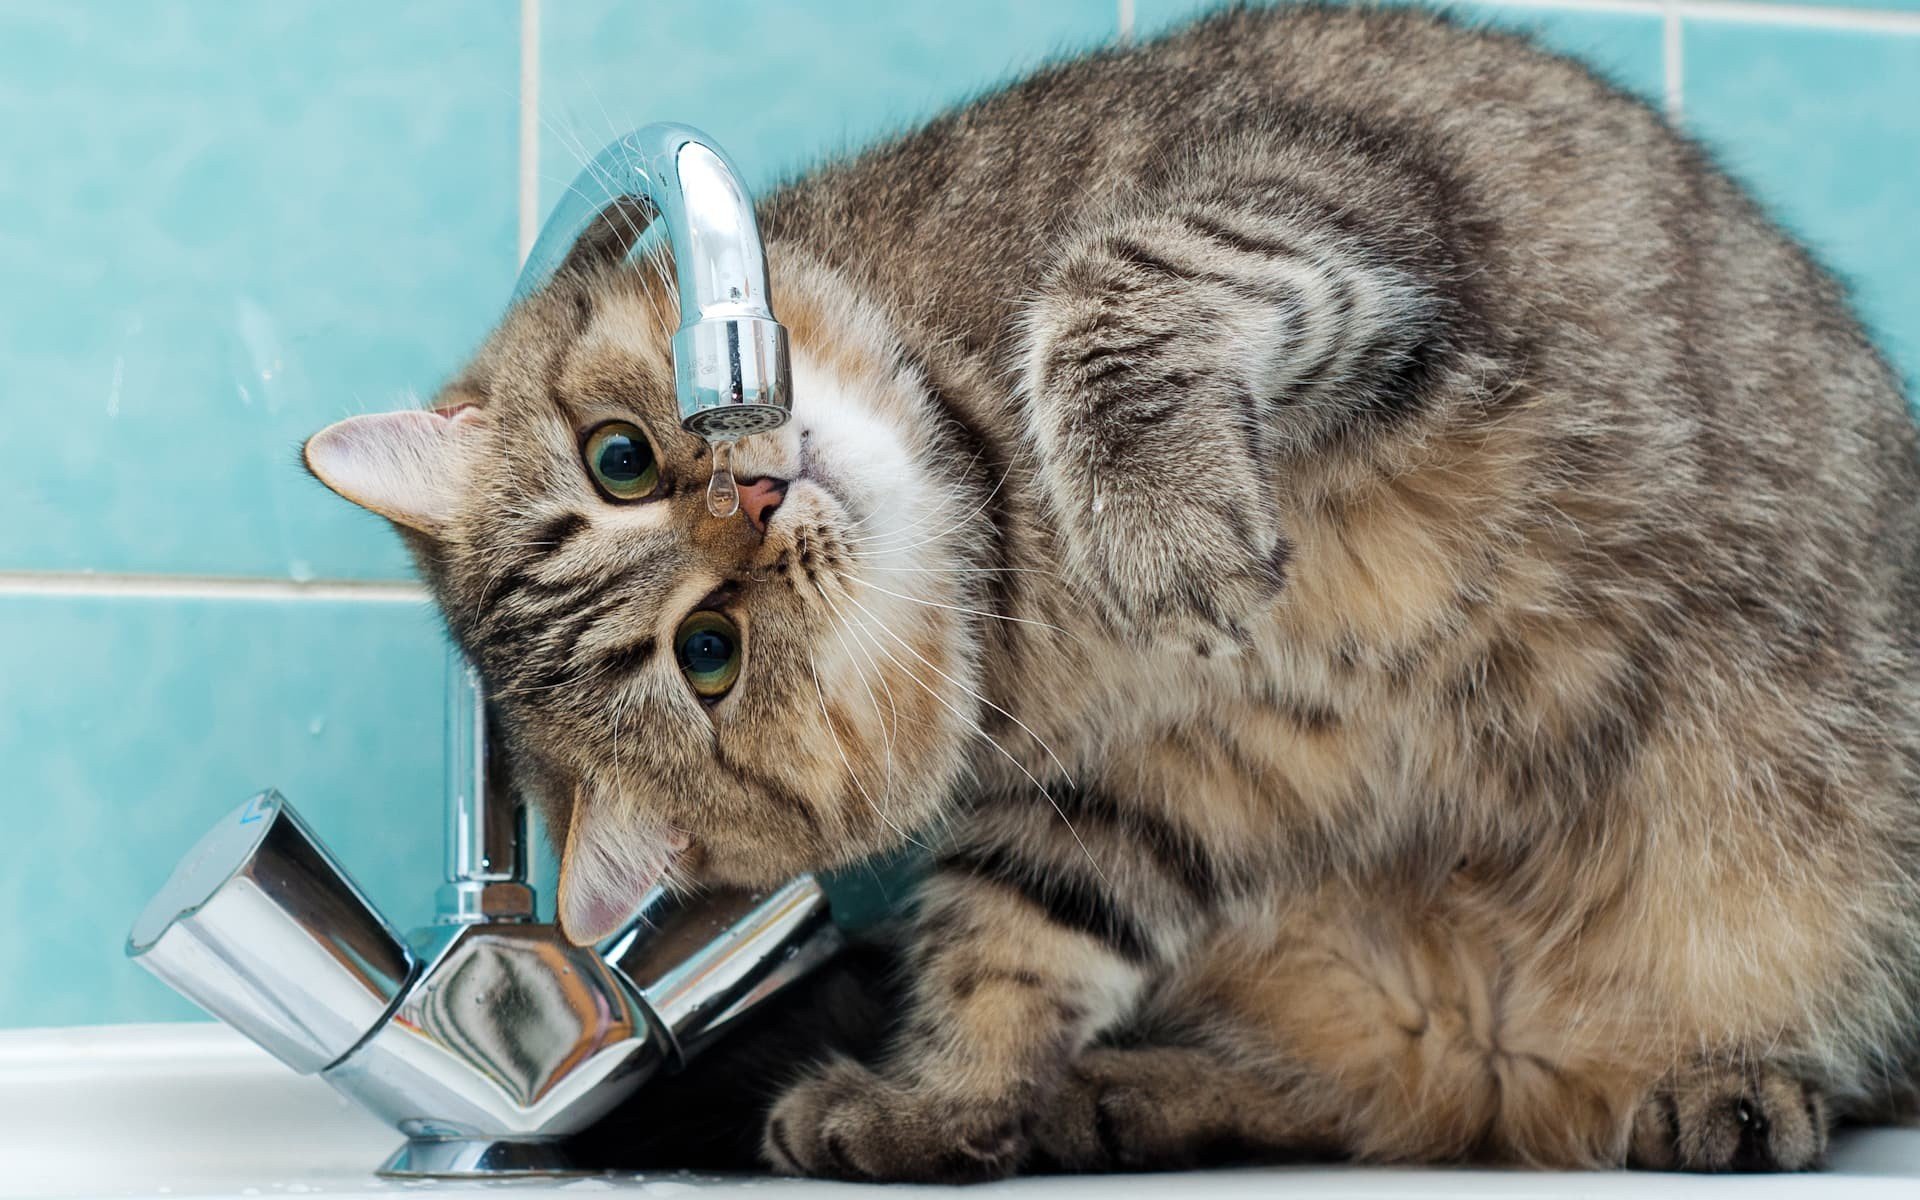 Котик пьет воду. Кот и кран с водой. Кошка под краном.